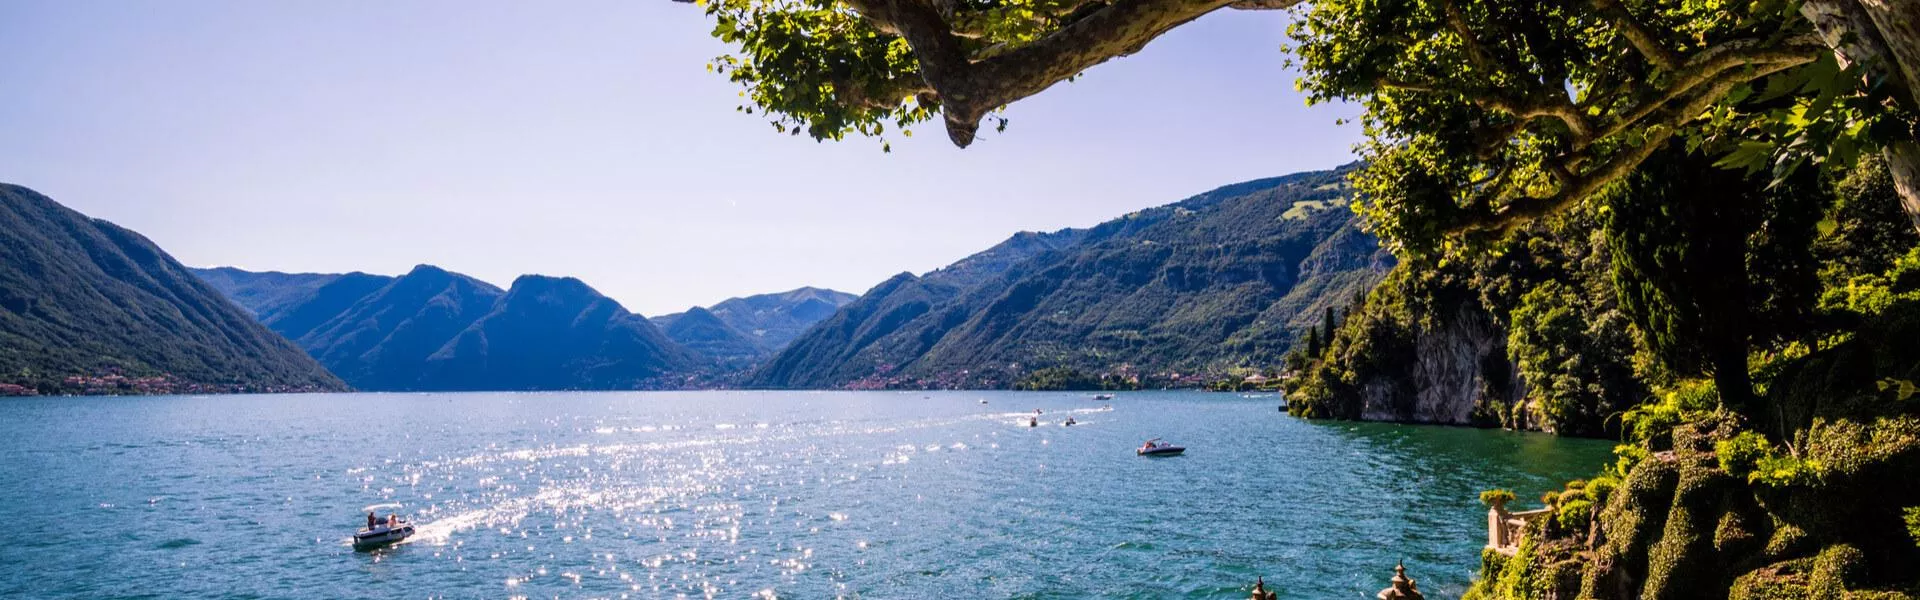 Campings zoeken aan een van de Italiaanse meren